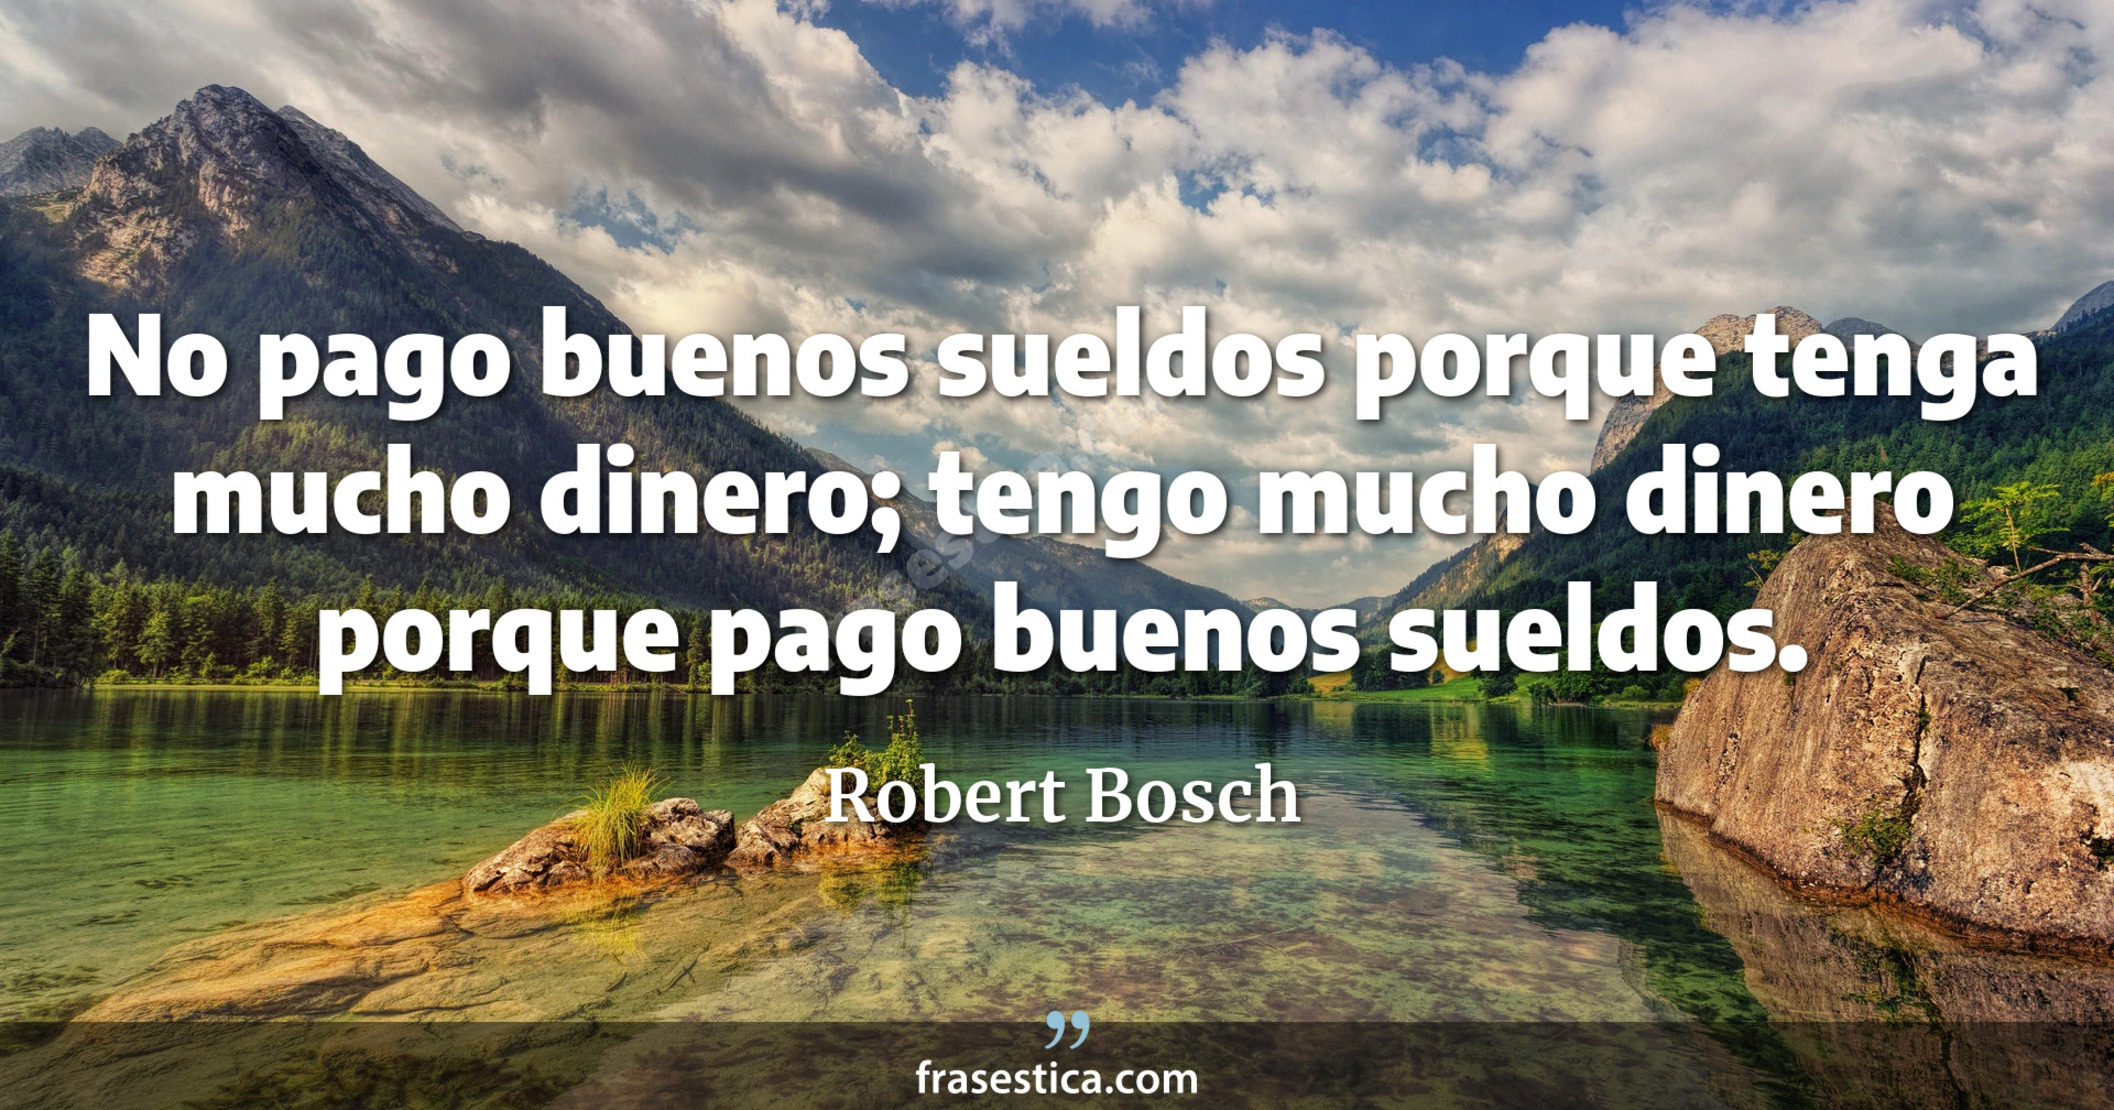 No pago buenos sueldos porque tenga mucho dinero; tengo mucho dinero porque pago buenos sueldos. - Robert Bosch